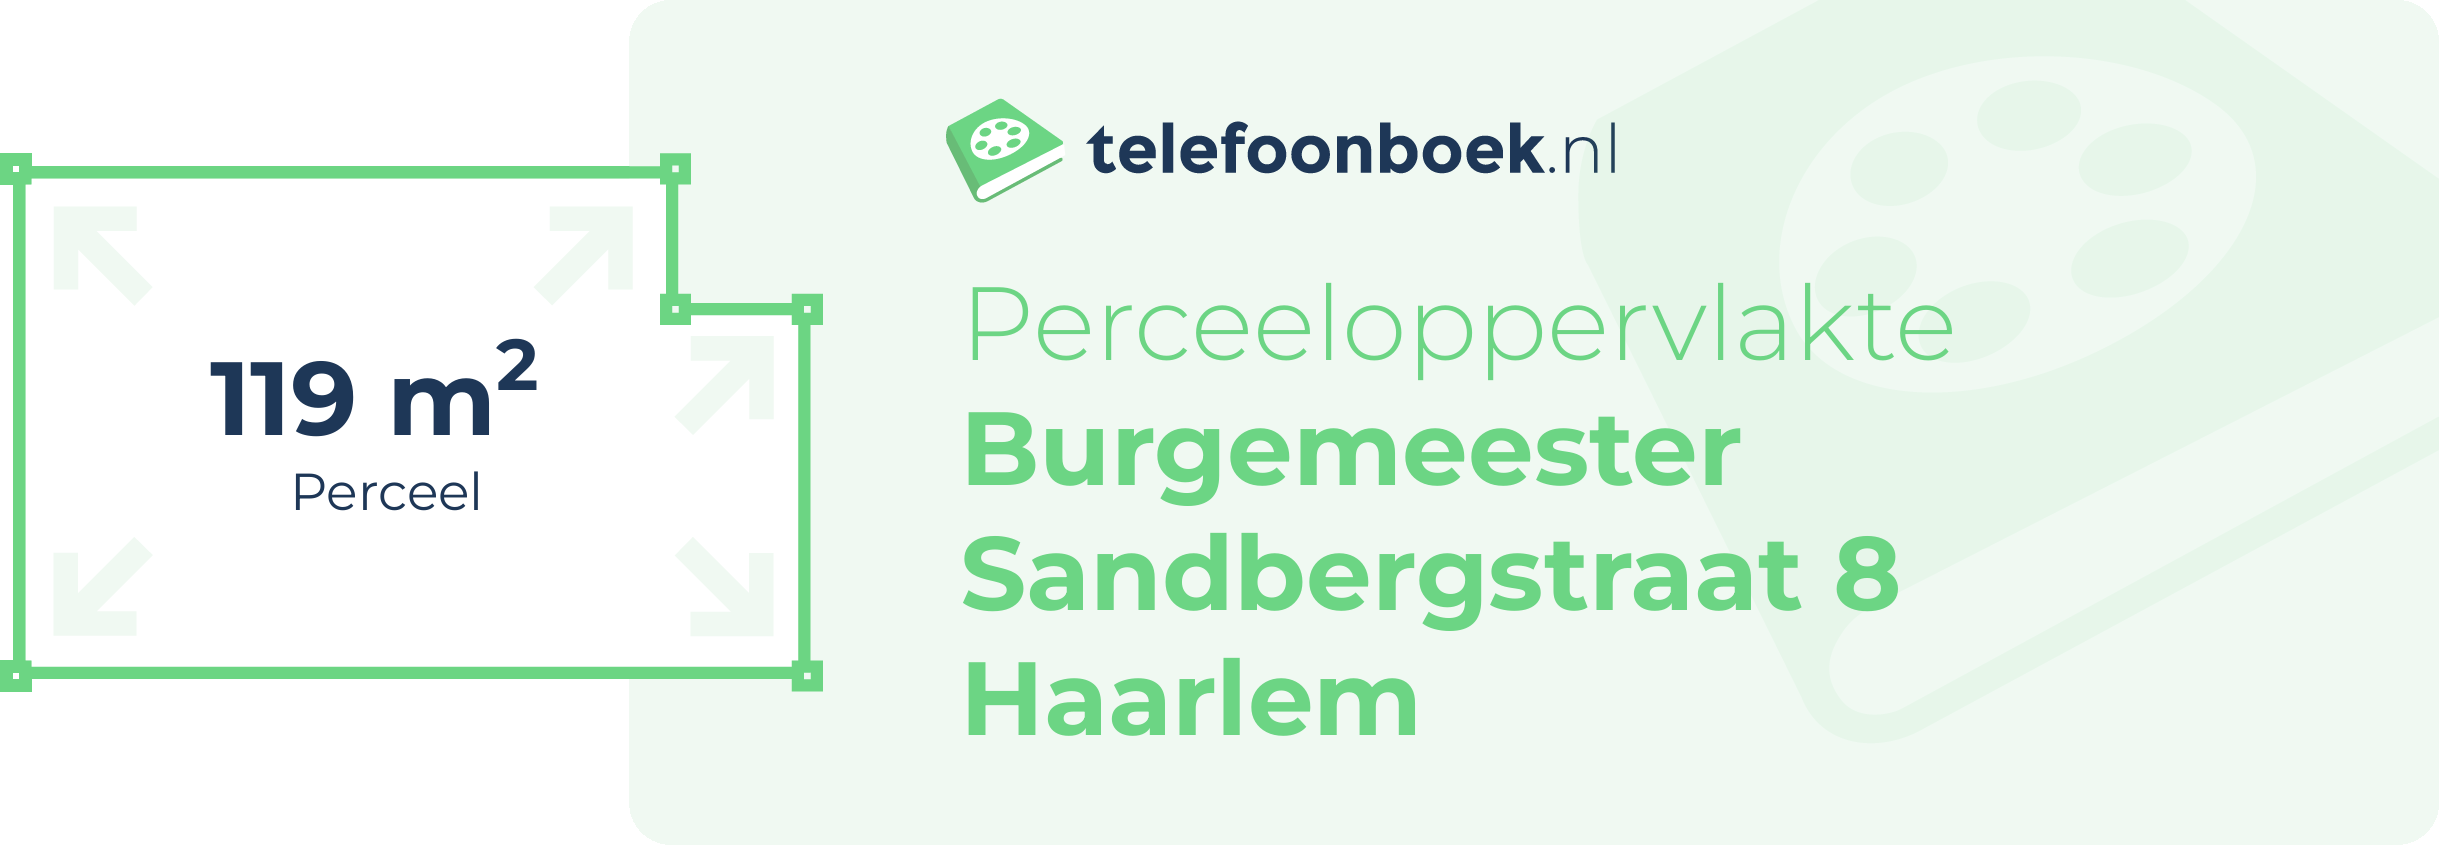 Perceeloppervlakte Burgemeester Sandbergstraat 8 Haarlem